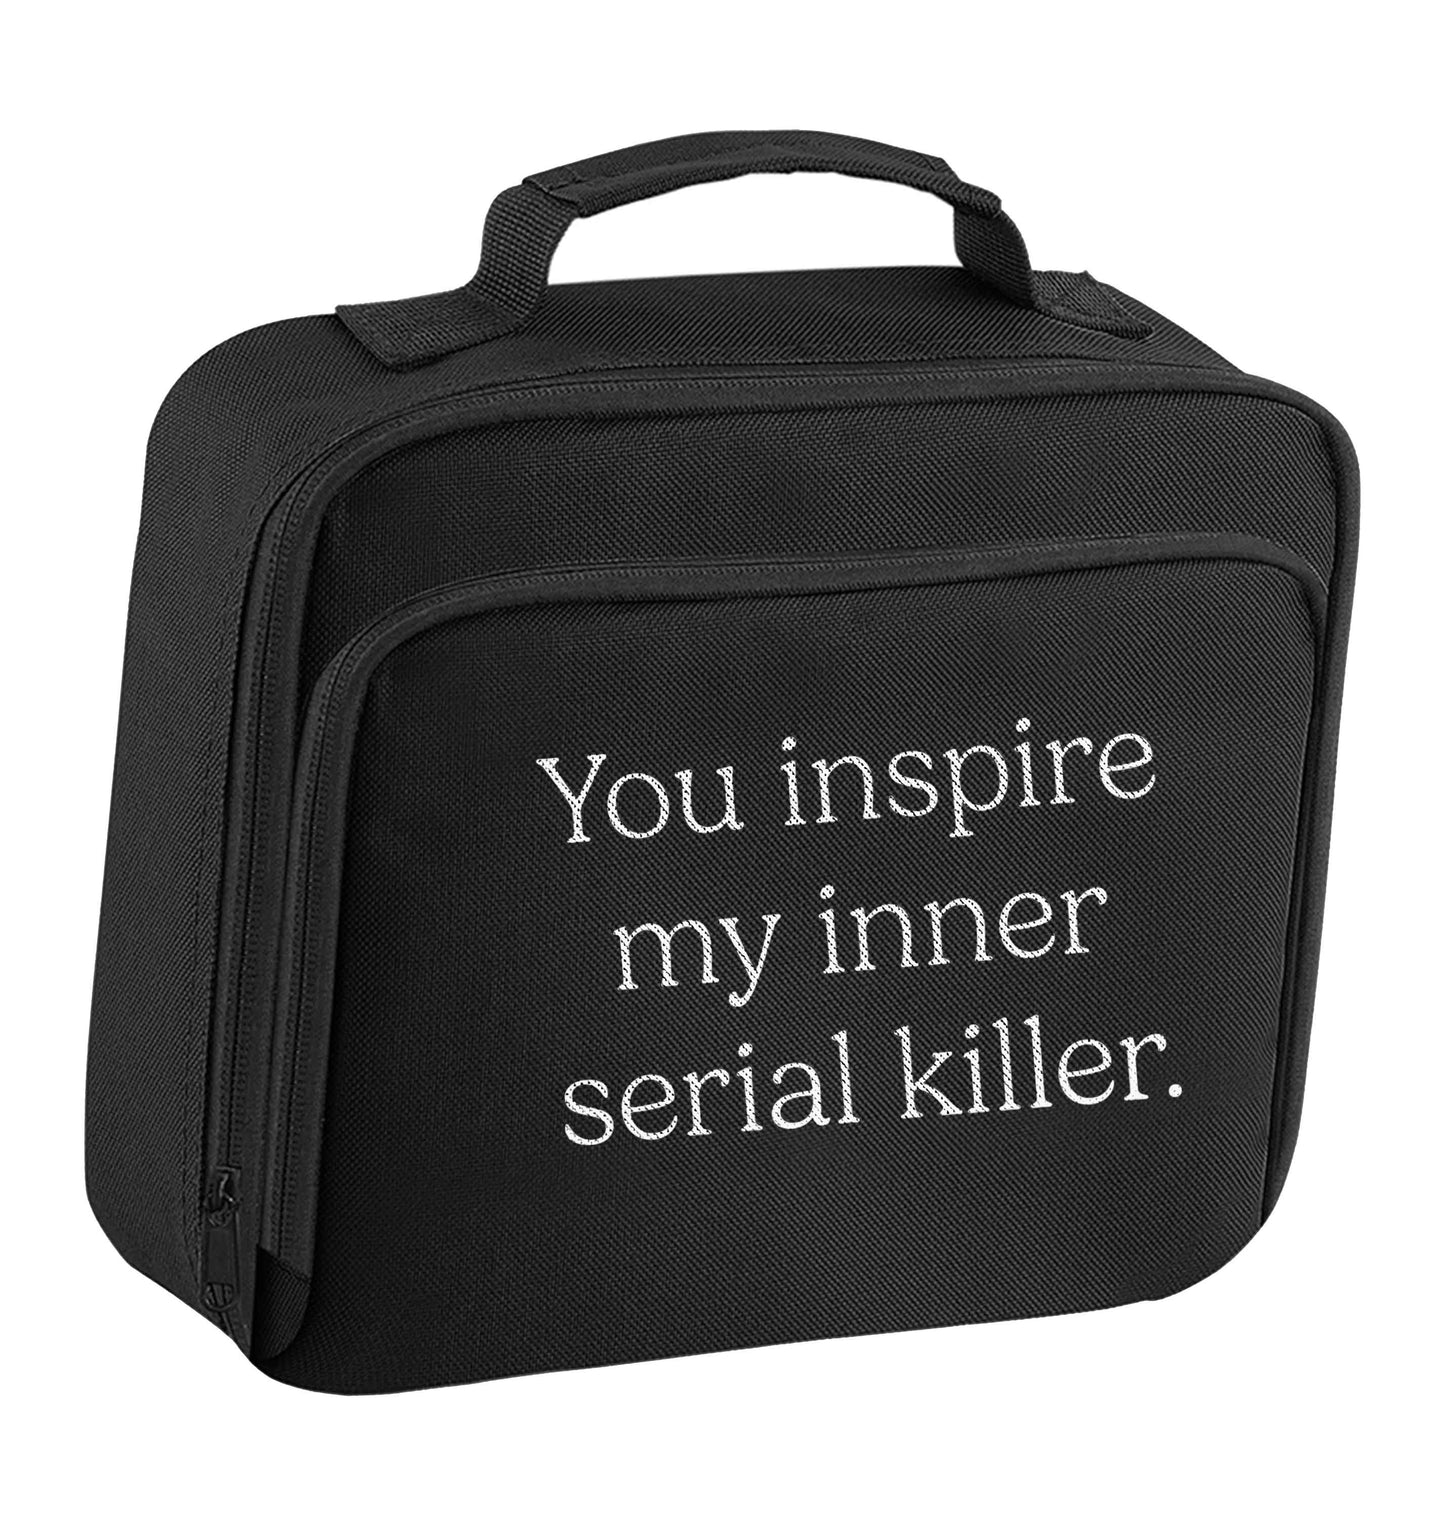 You inspire my inner serial killer Kit insulated black lunch bag cooler